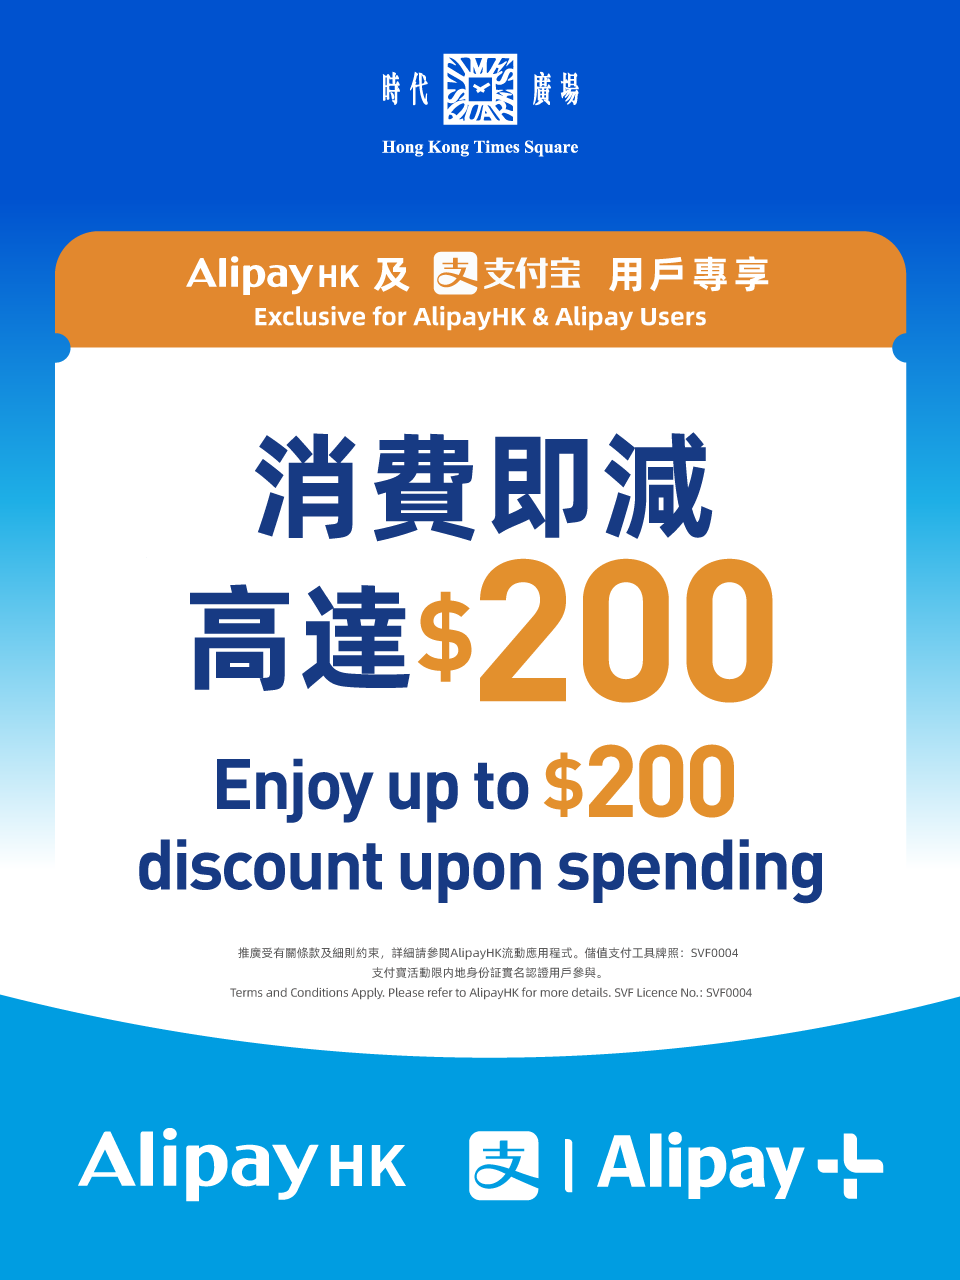 Alipay x 時代廣場 4－5月限定獎賞